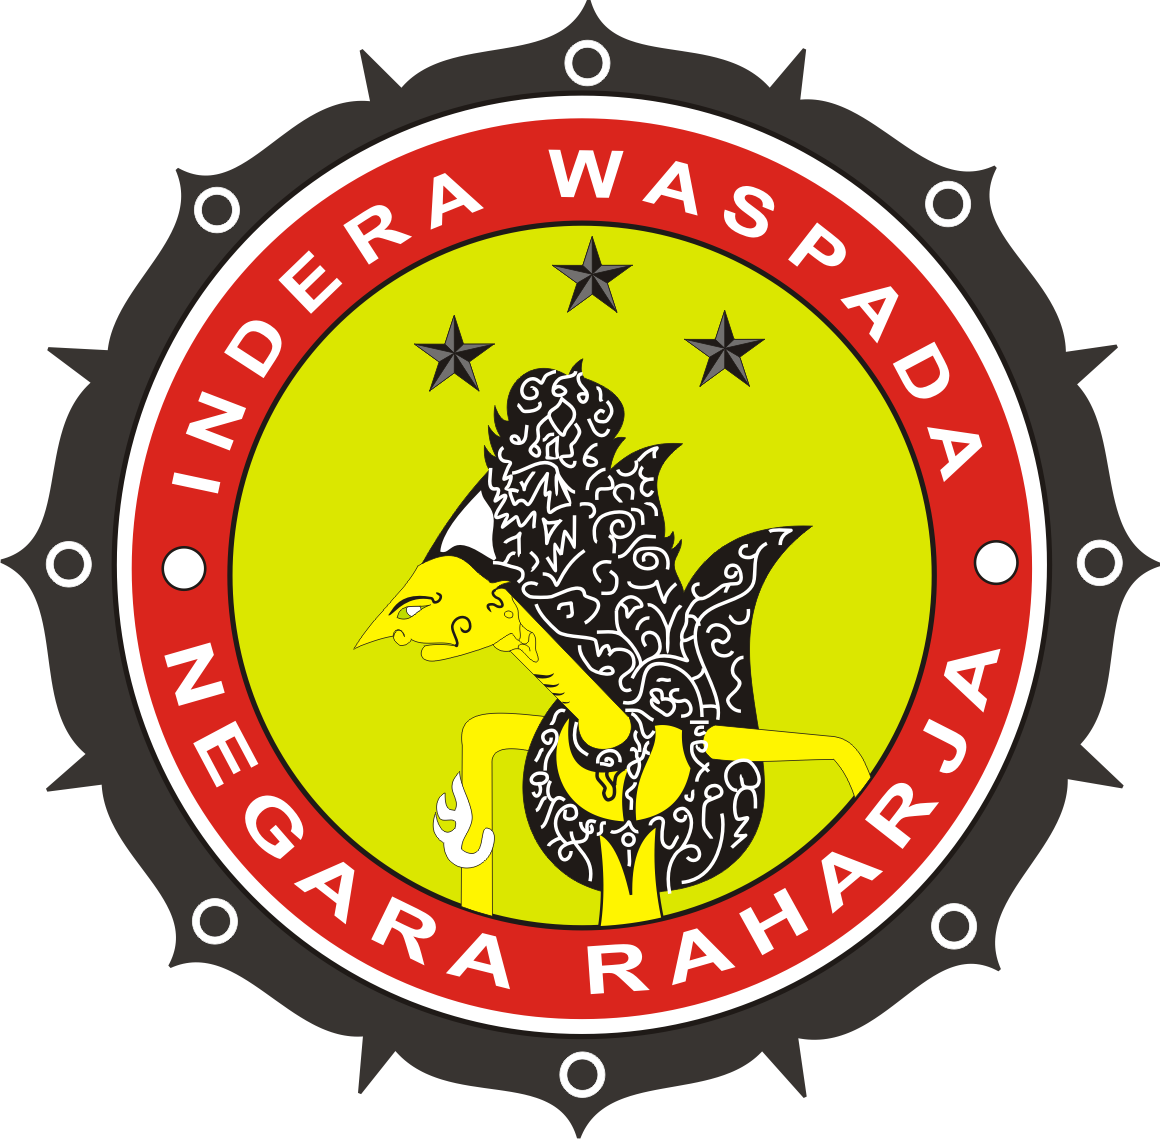 Logo Intelkam POLRI Kepolisian Repubik Indonesia Indera